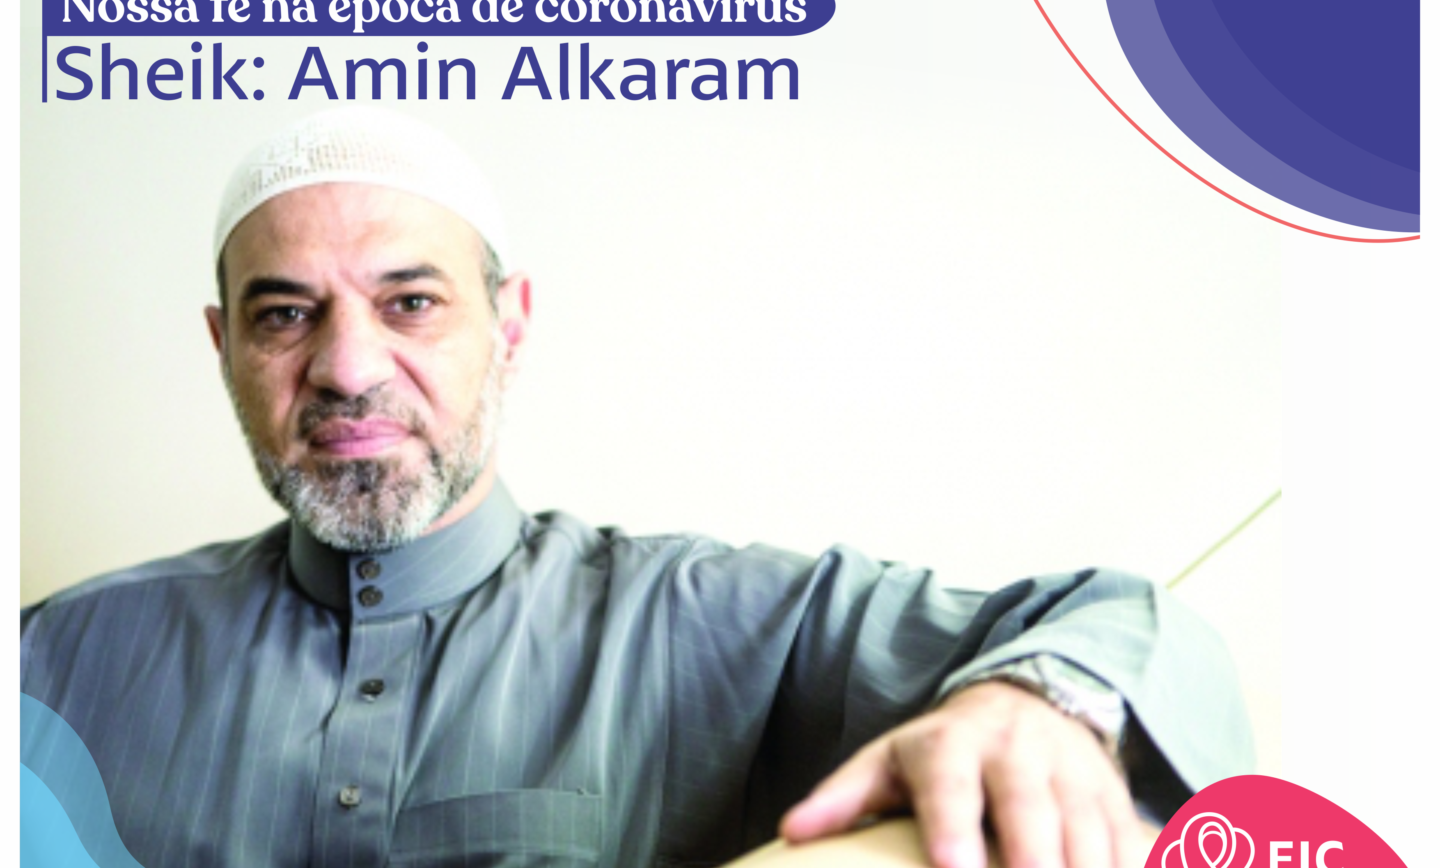 Carta do sheik Amin Alkaram